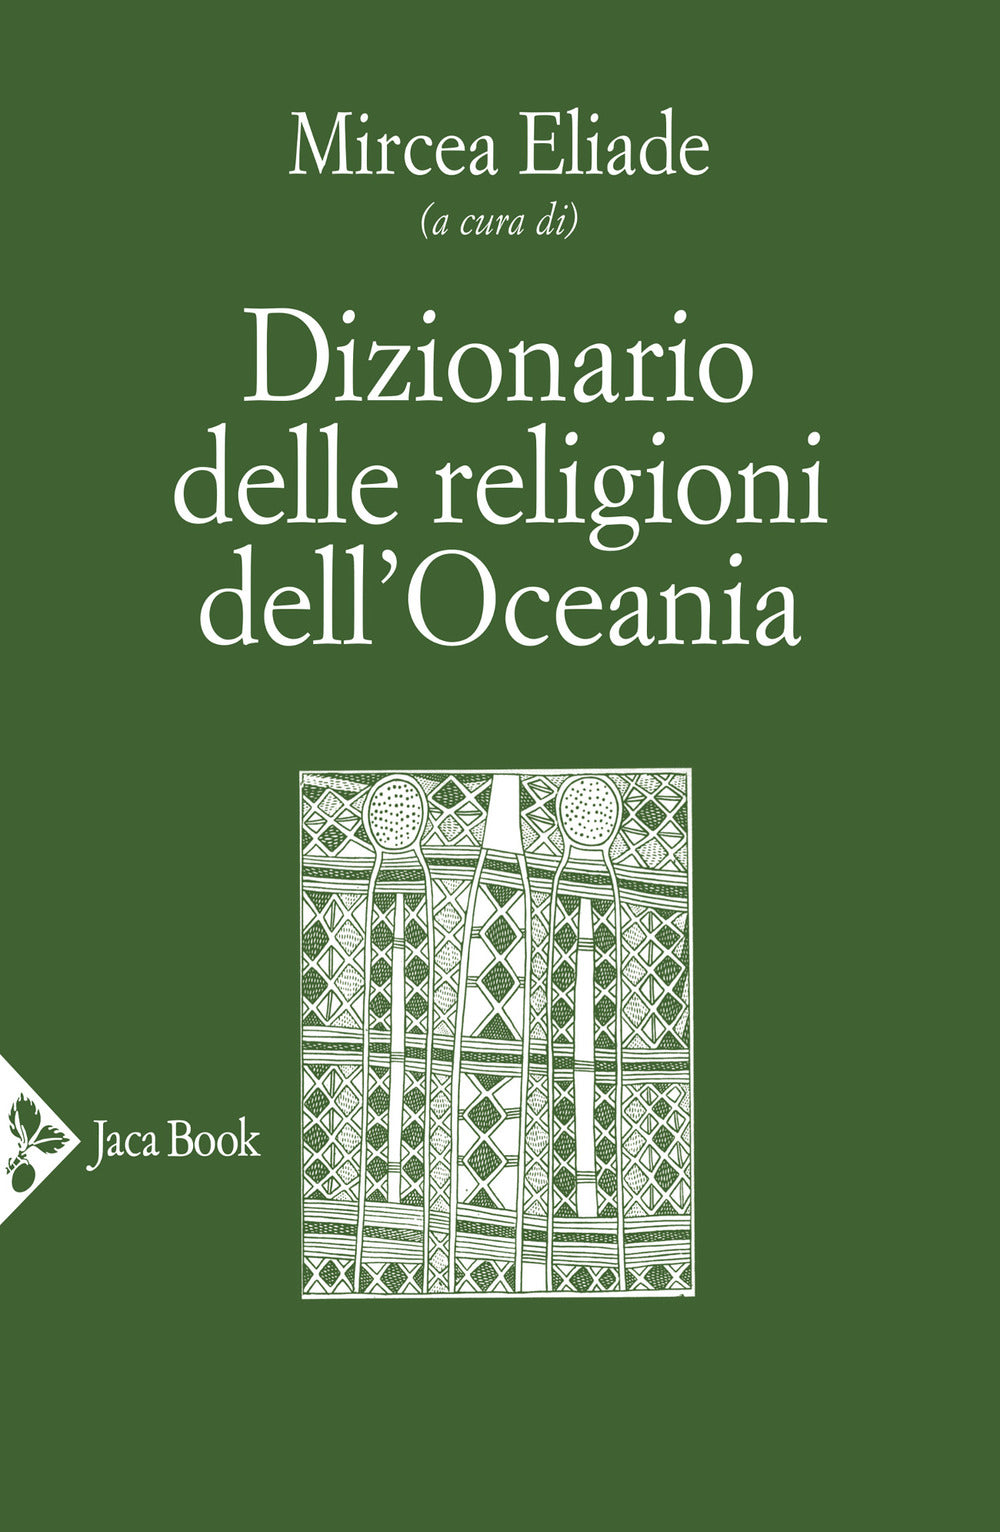 Dizionario delle religioni dell'Oceania.